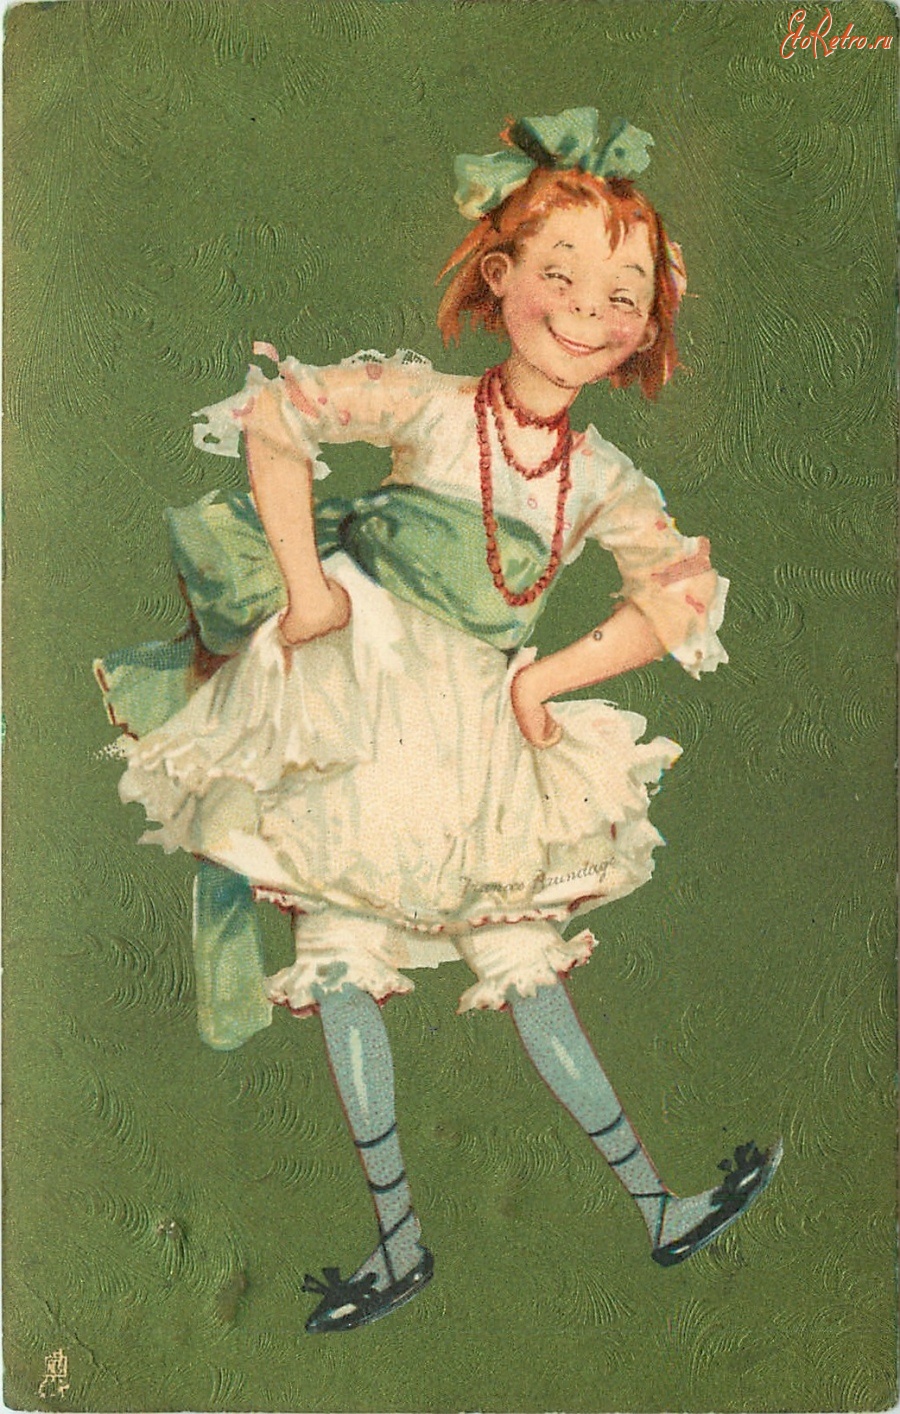 Ретро открытки - Одета по последней моде. Девочка в белом платье с зелёным бантом